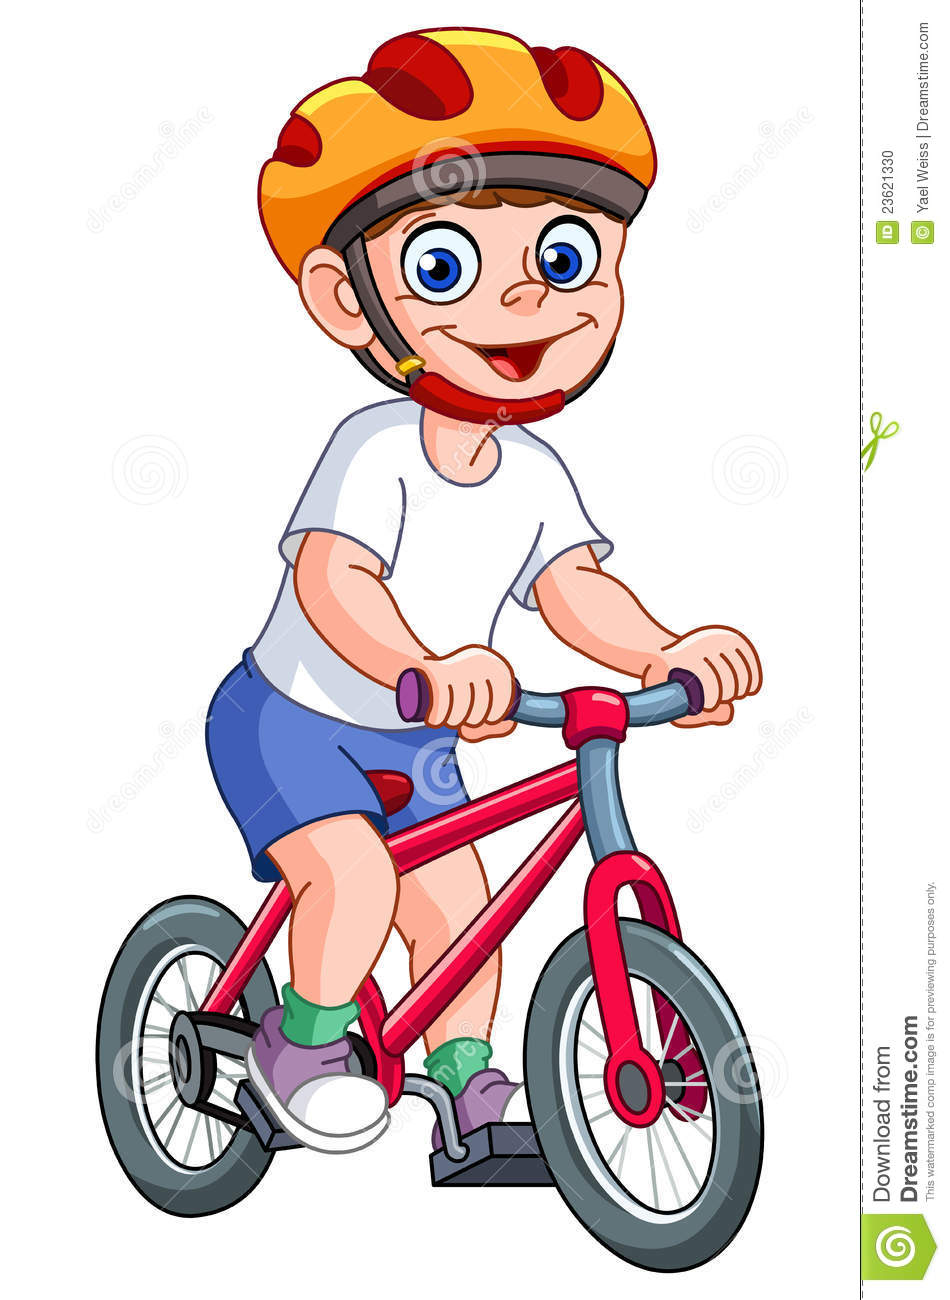 Fahrrad fahren clipart